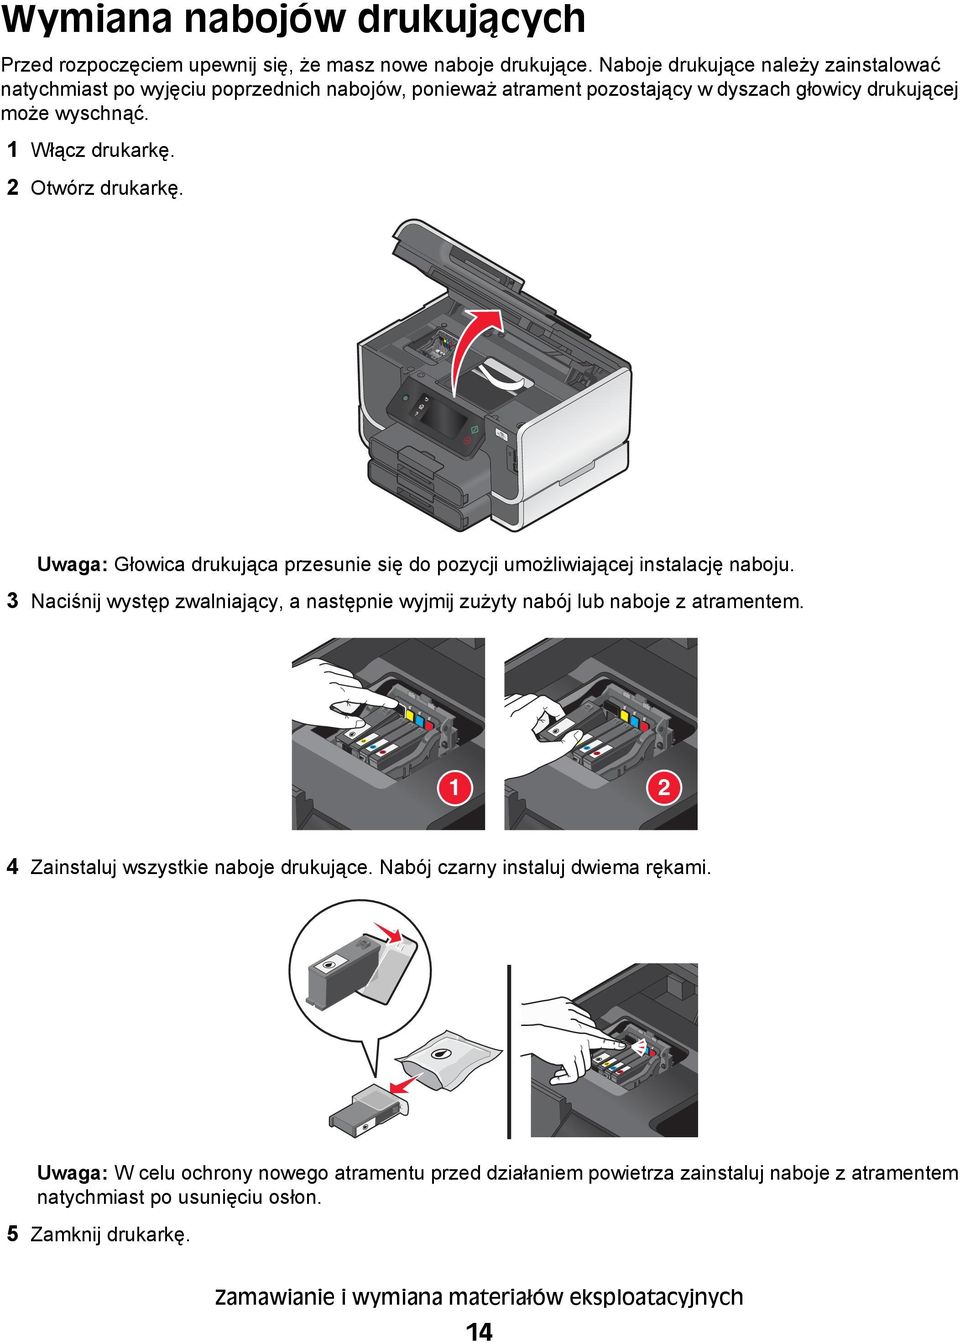 2 Otwórz drukarkę. Uwaga: Głowica drukująca przesunie się do pozycji umożliwiającej instalację naboju.